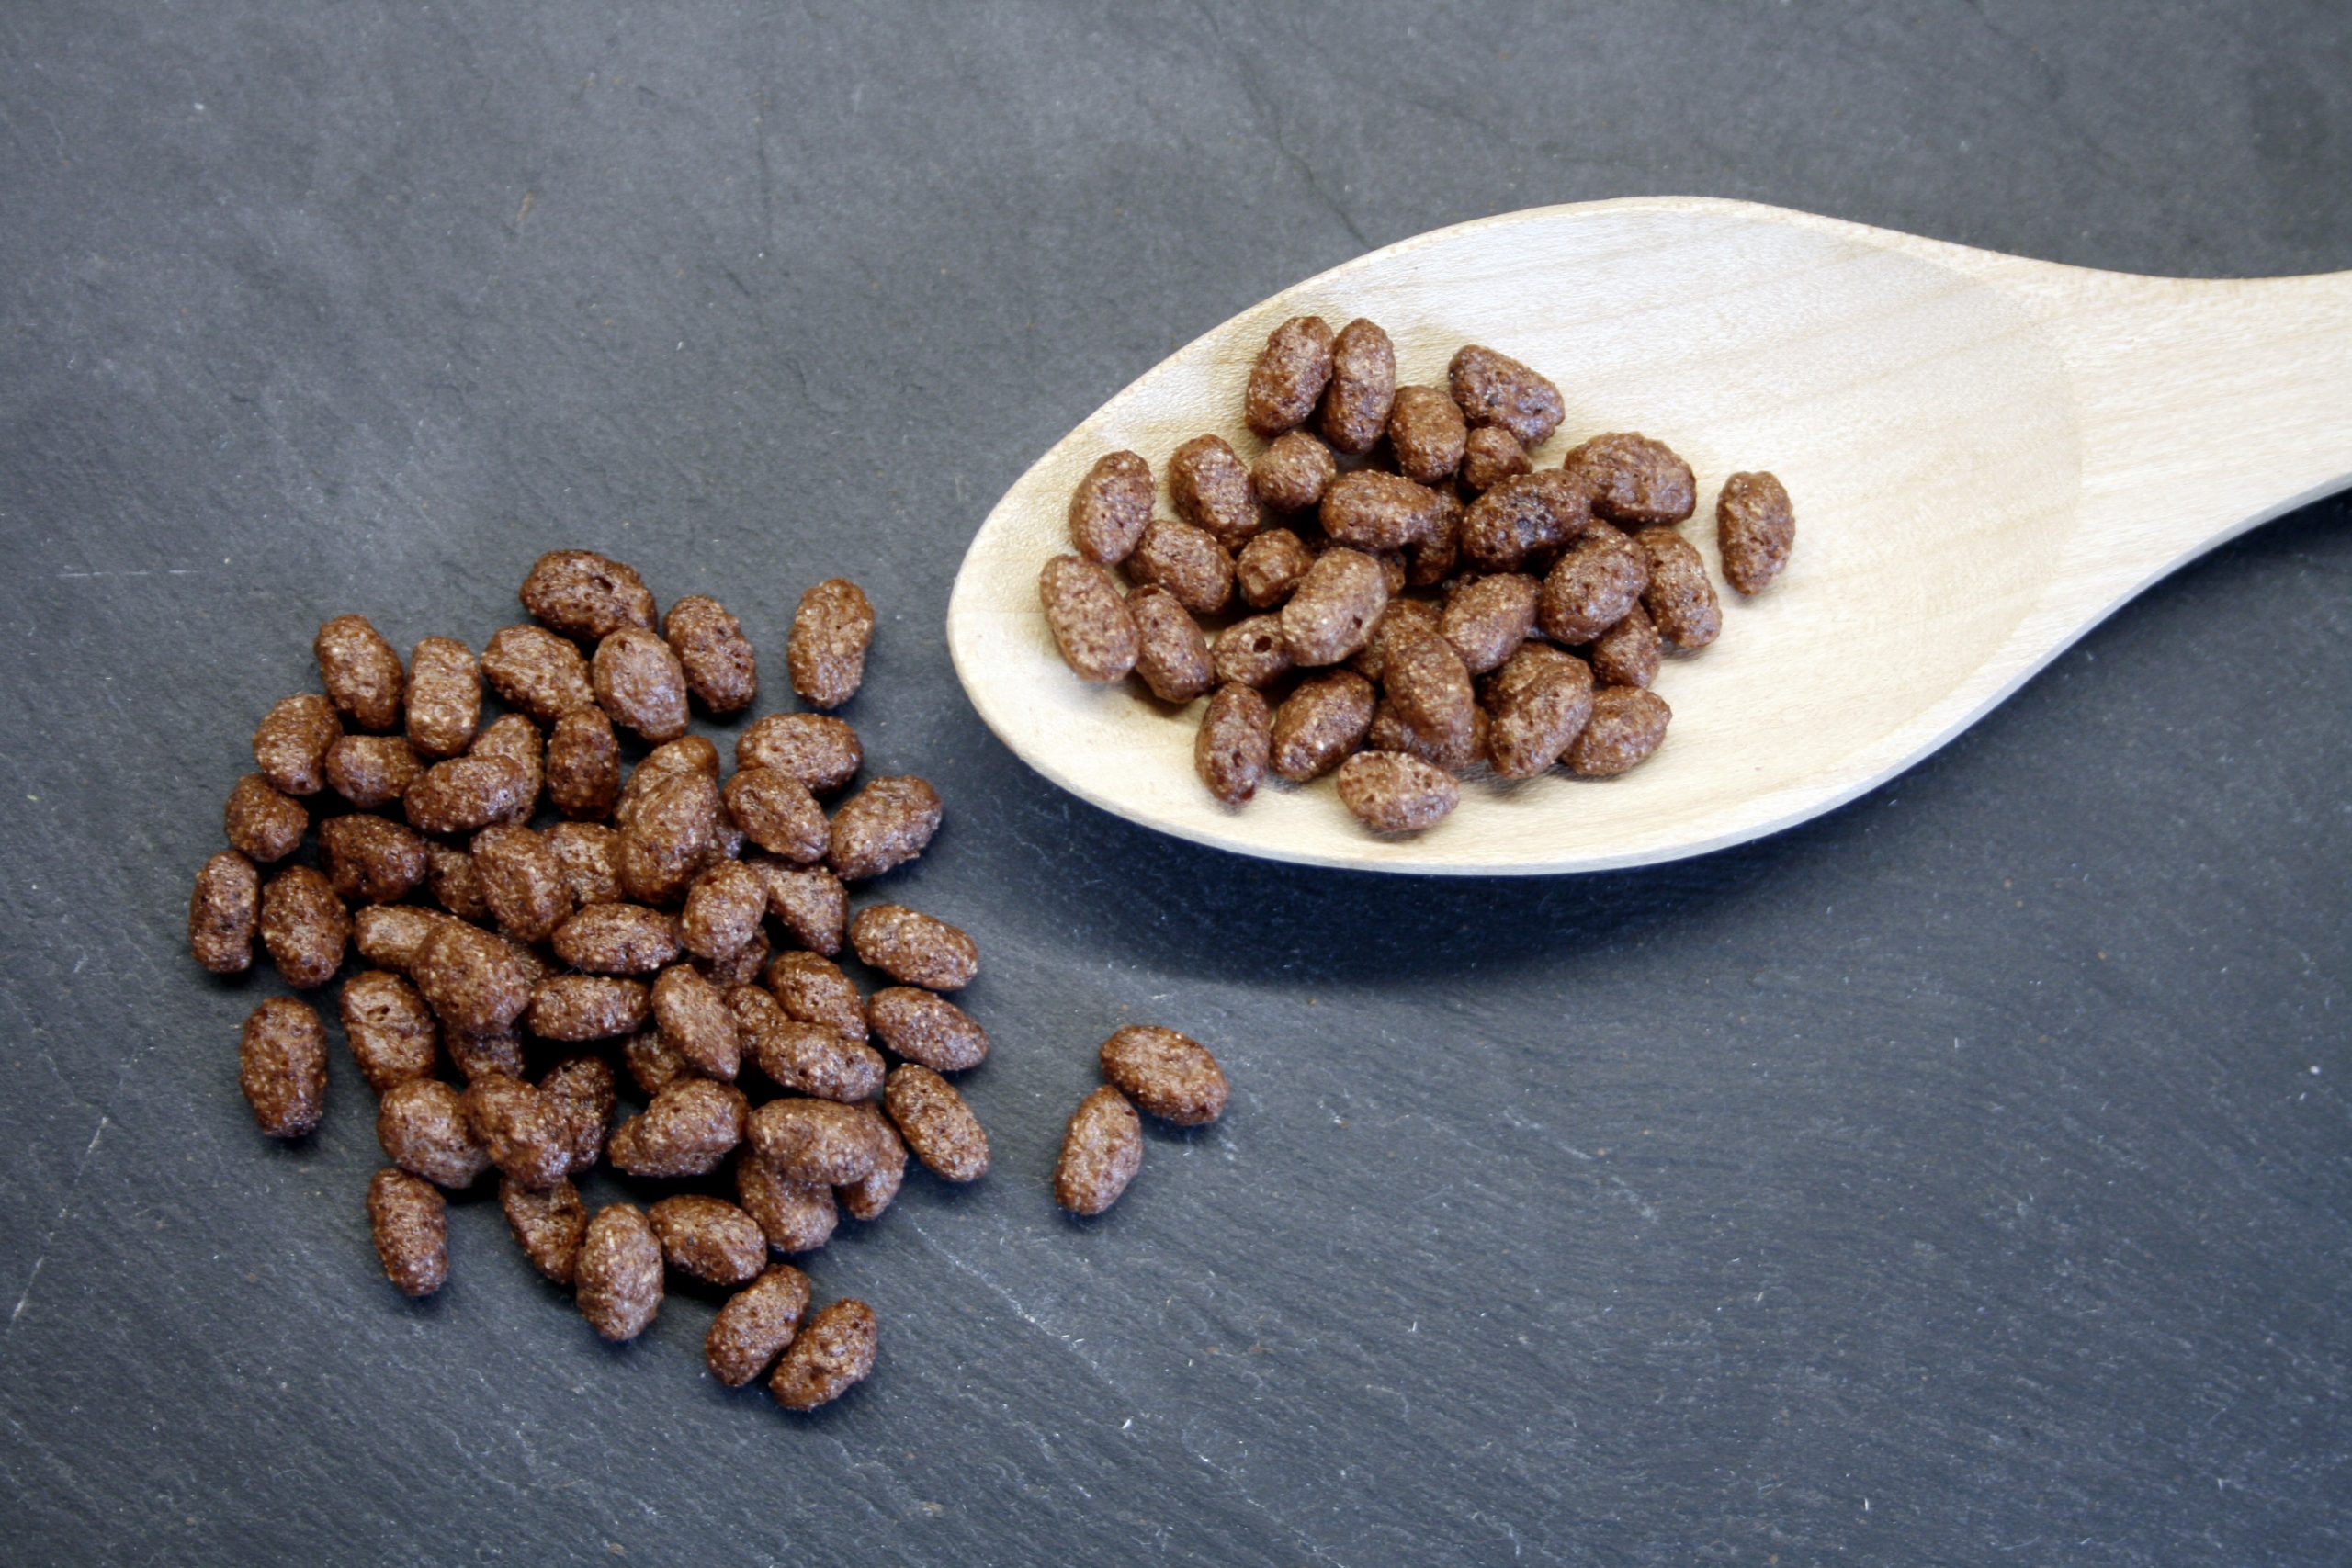 Riz soufflé au cacao bio - Markal